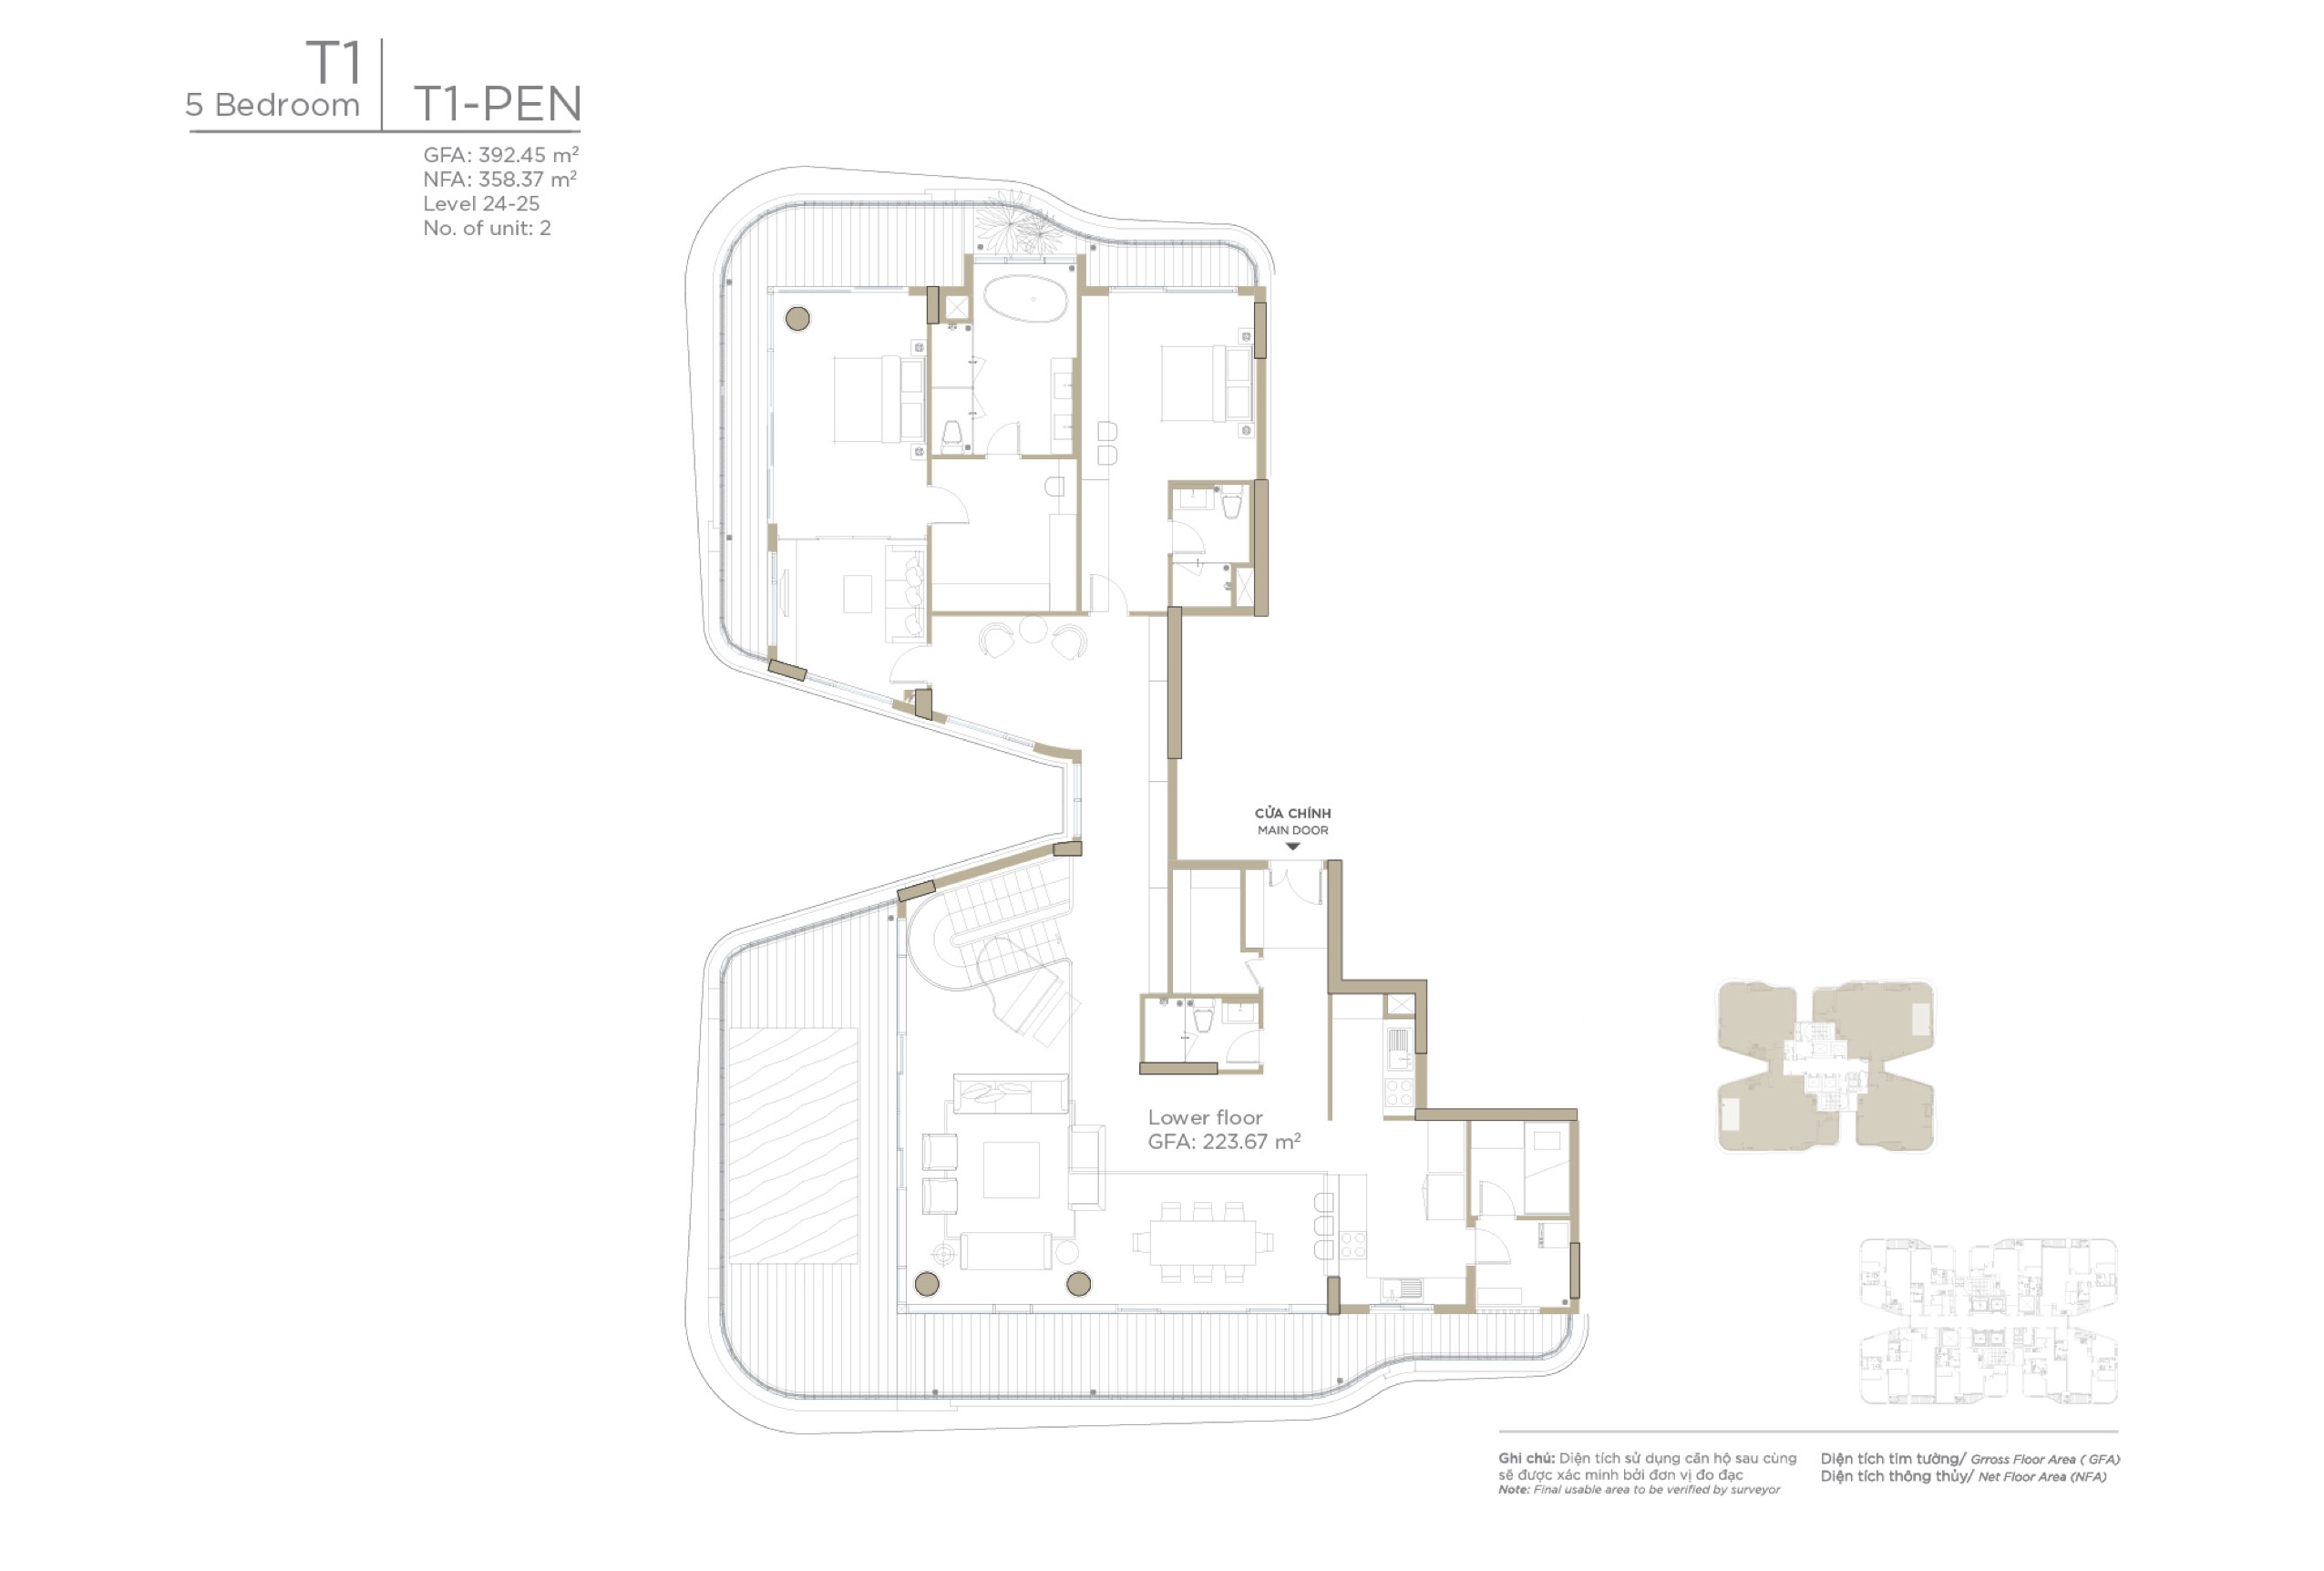 Mặt bằng layout căn hộ Duplex Penthouse 5 phòng ngủ Zeit River Thủ Thiêm tháp T1 - bán chuyển nhượng căn hộ Duplex penthouse 5 phòng ngủ Zeit River Thủ Thiêm tháp T1